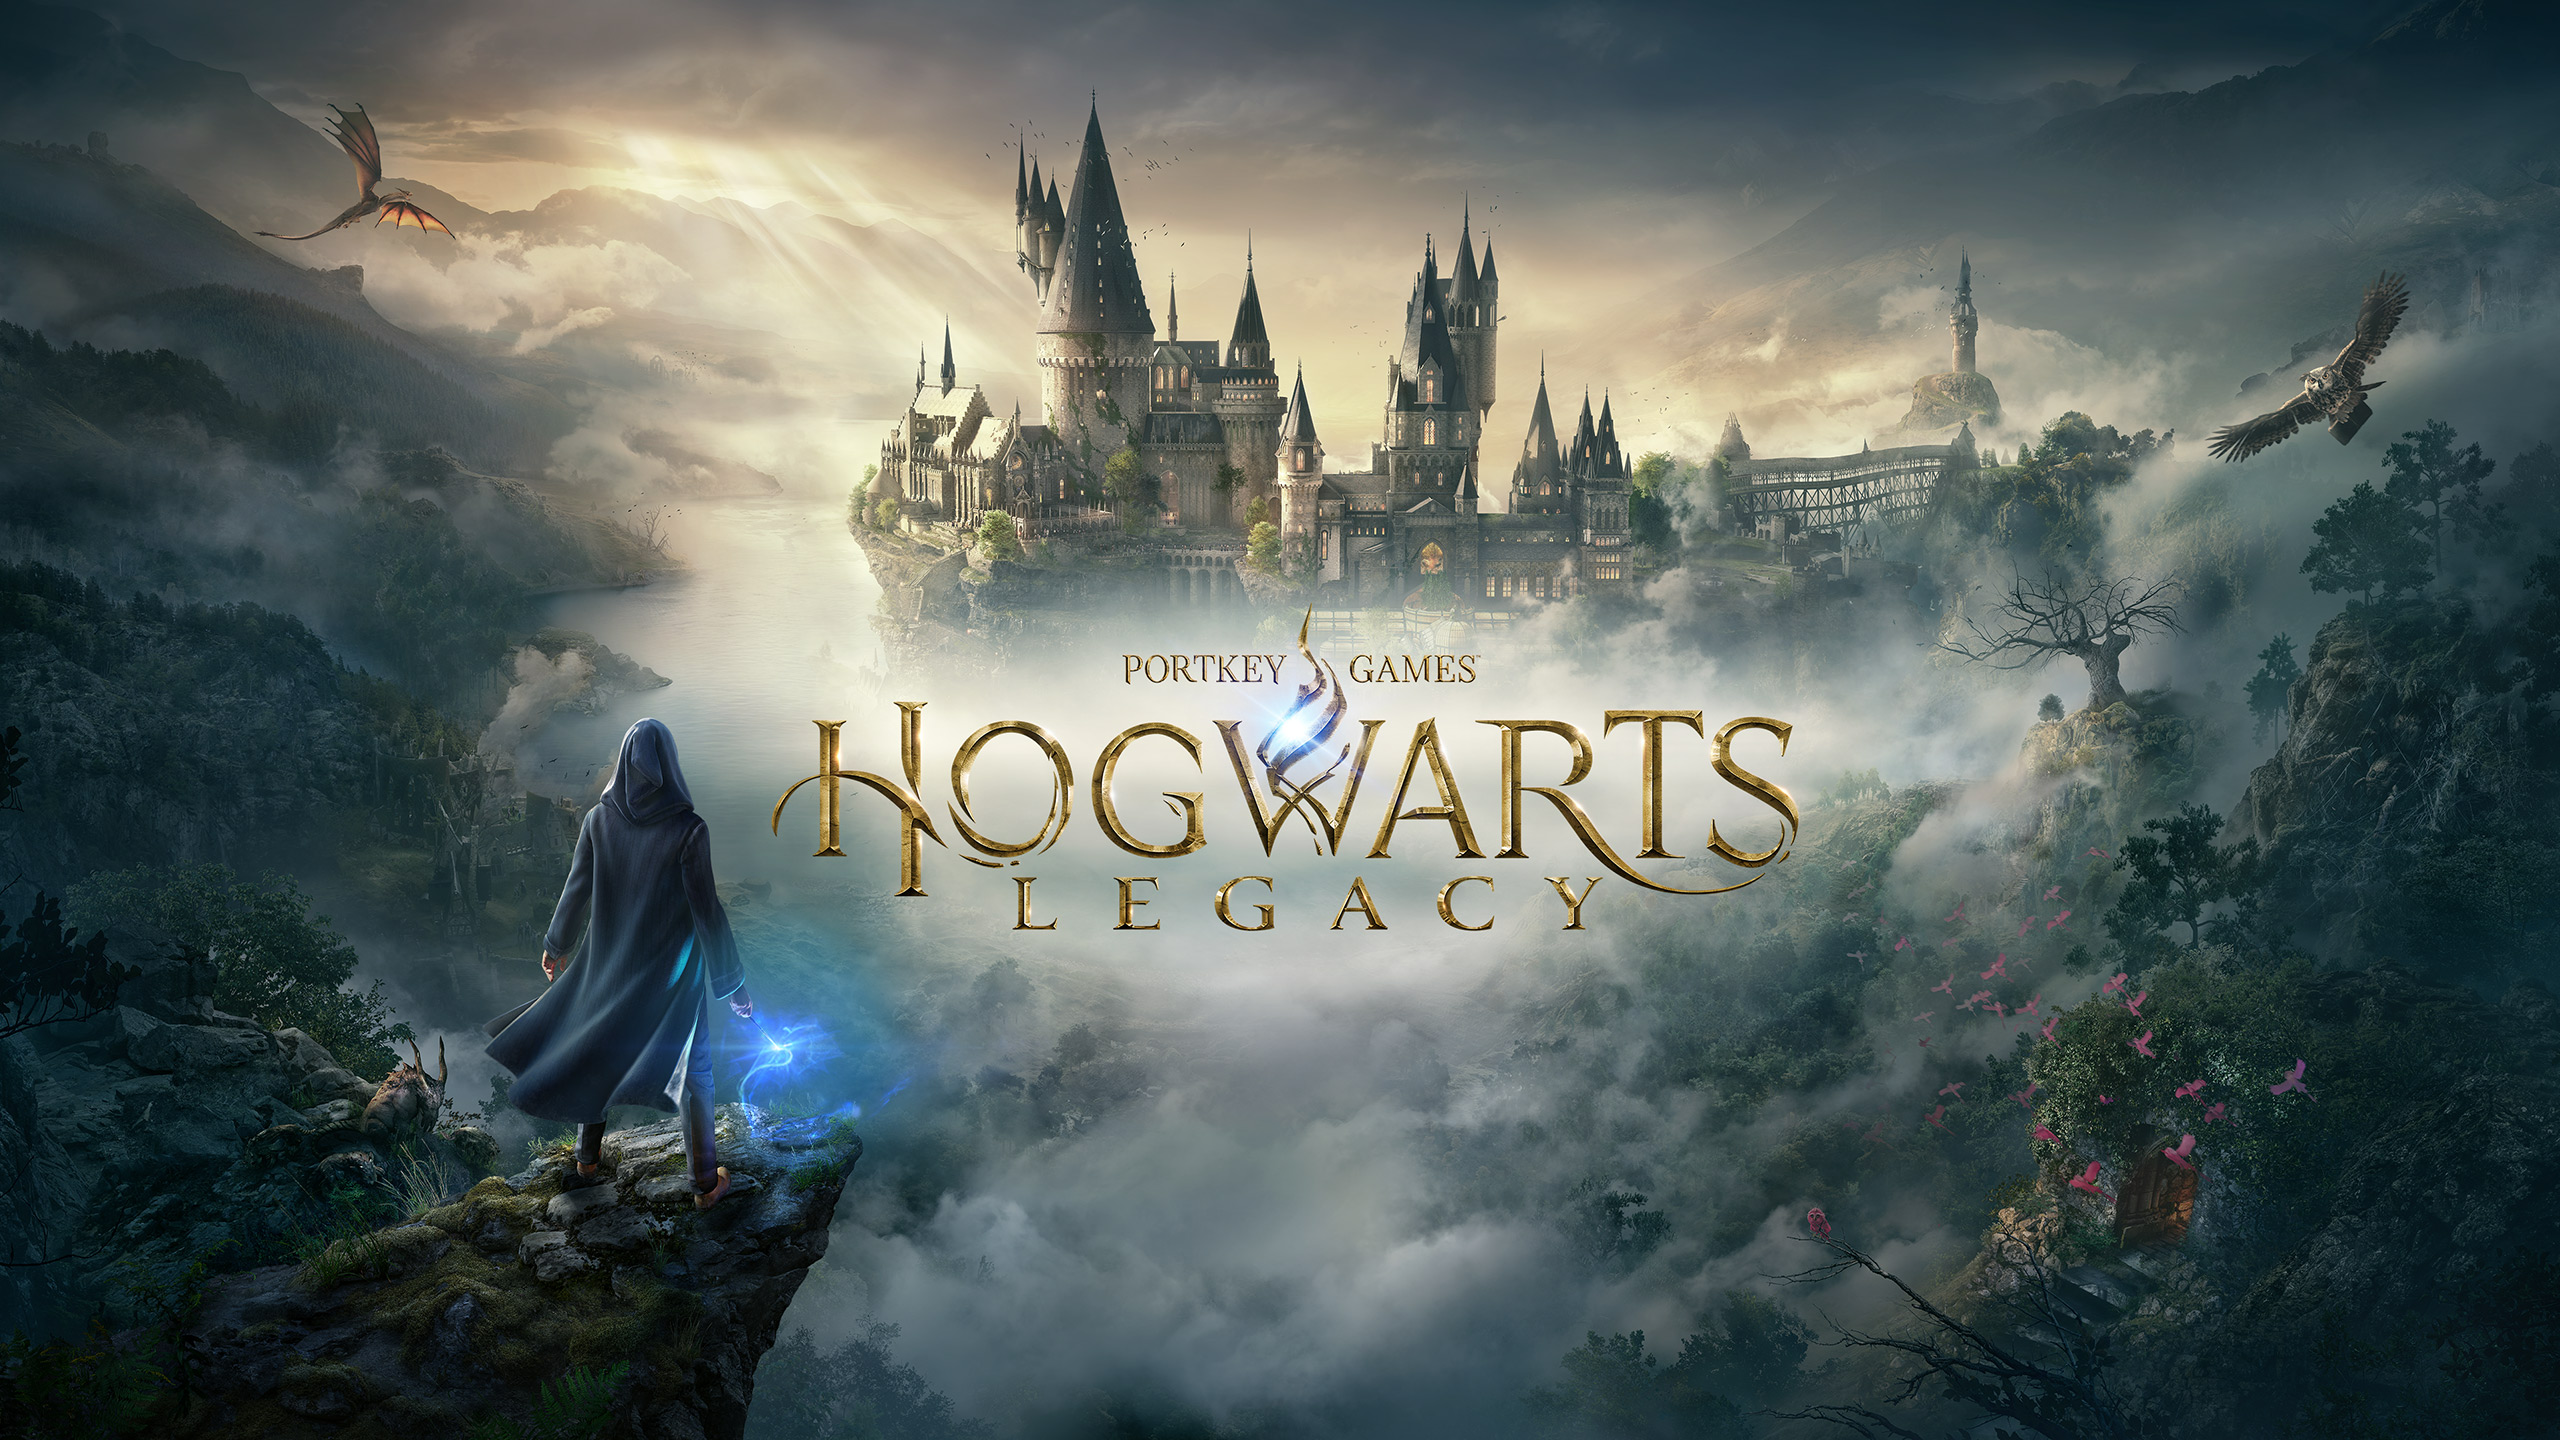 Download Game Hogwarts Legacy Gratis, Rasakan Petualangan Seru Di Dunia Sihir Di Sini!